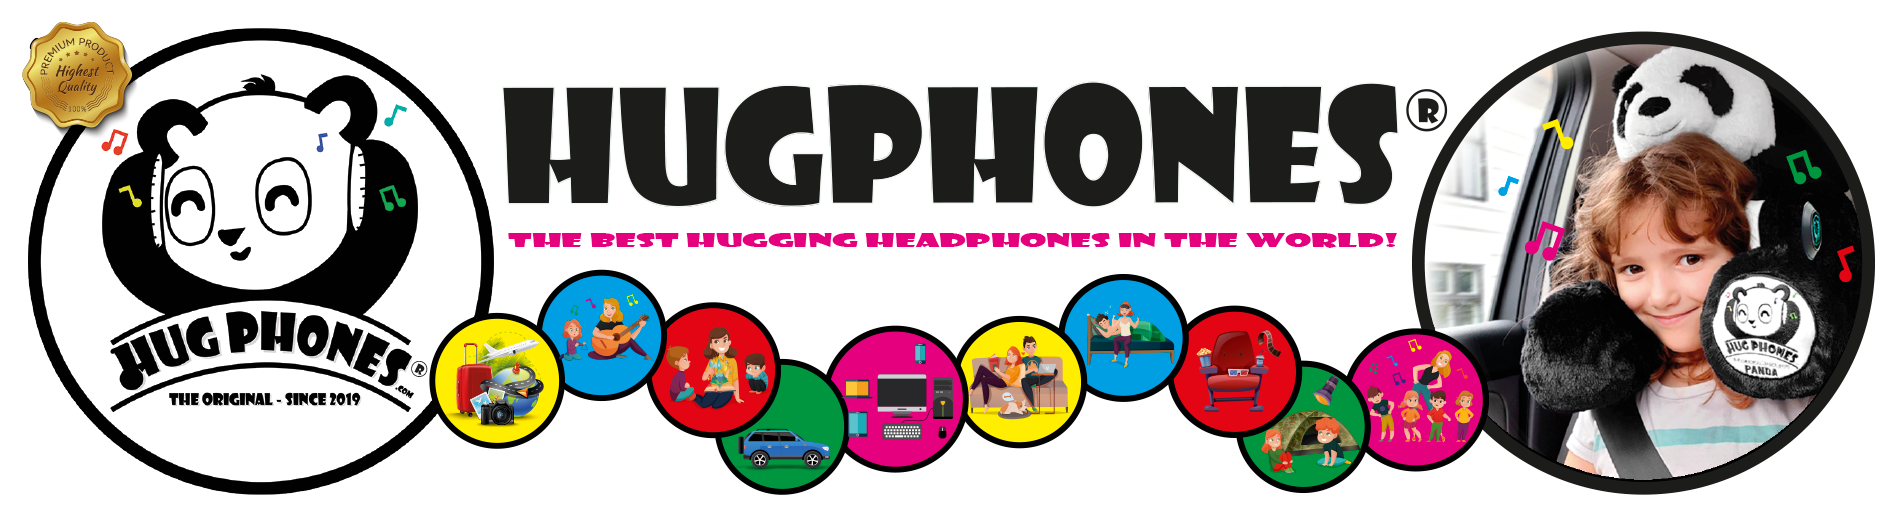 HugPhones-Intro-Banner2_500kb.png